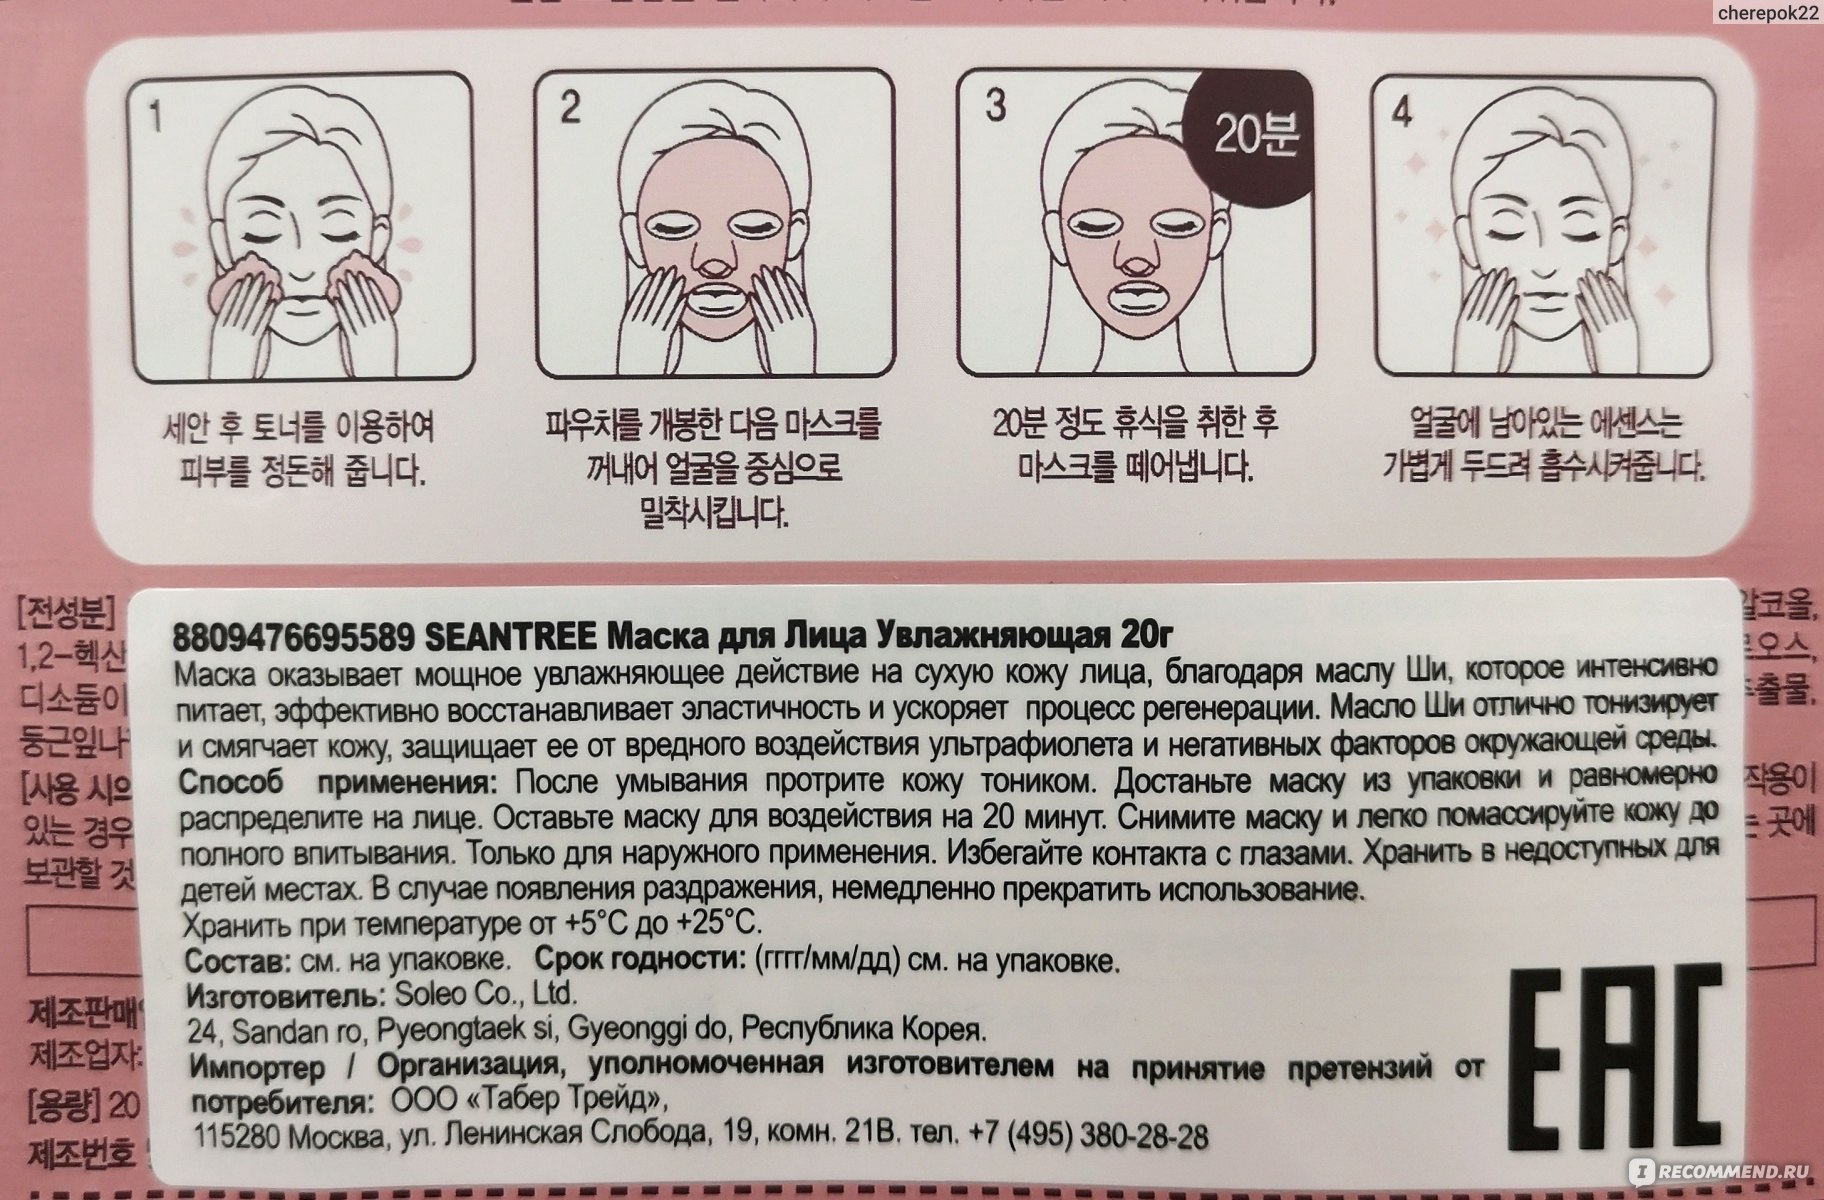 Можно ли тканевые маски использовать повторно. Маски для лица тканевые инструкция. Корейская маска для воздействия. Тканевая маска для лица как пользоваться. Тканевая маска для лица как пользоваться правильно корейская.